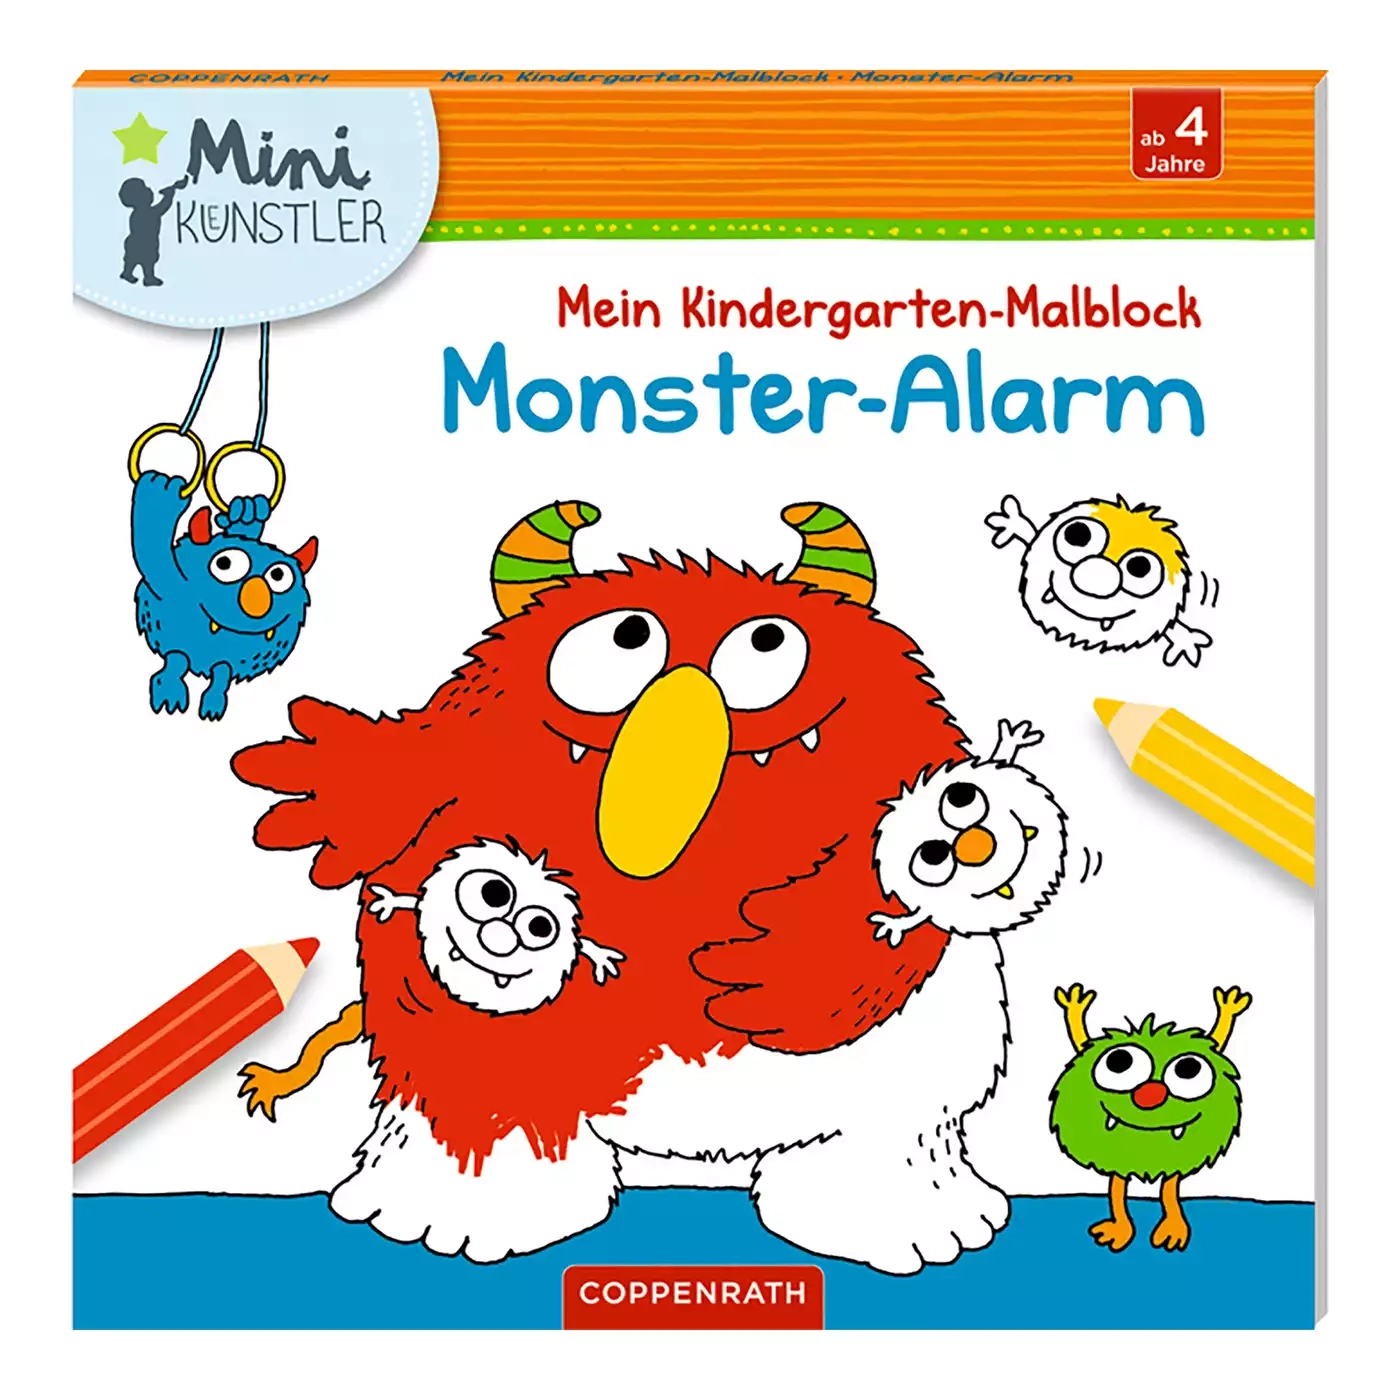 Mini-Künstler Mein Kindergarten-Malbuch Monster Alarm COPPENRATH 2000574969503 3